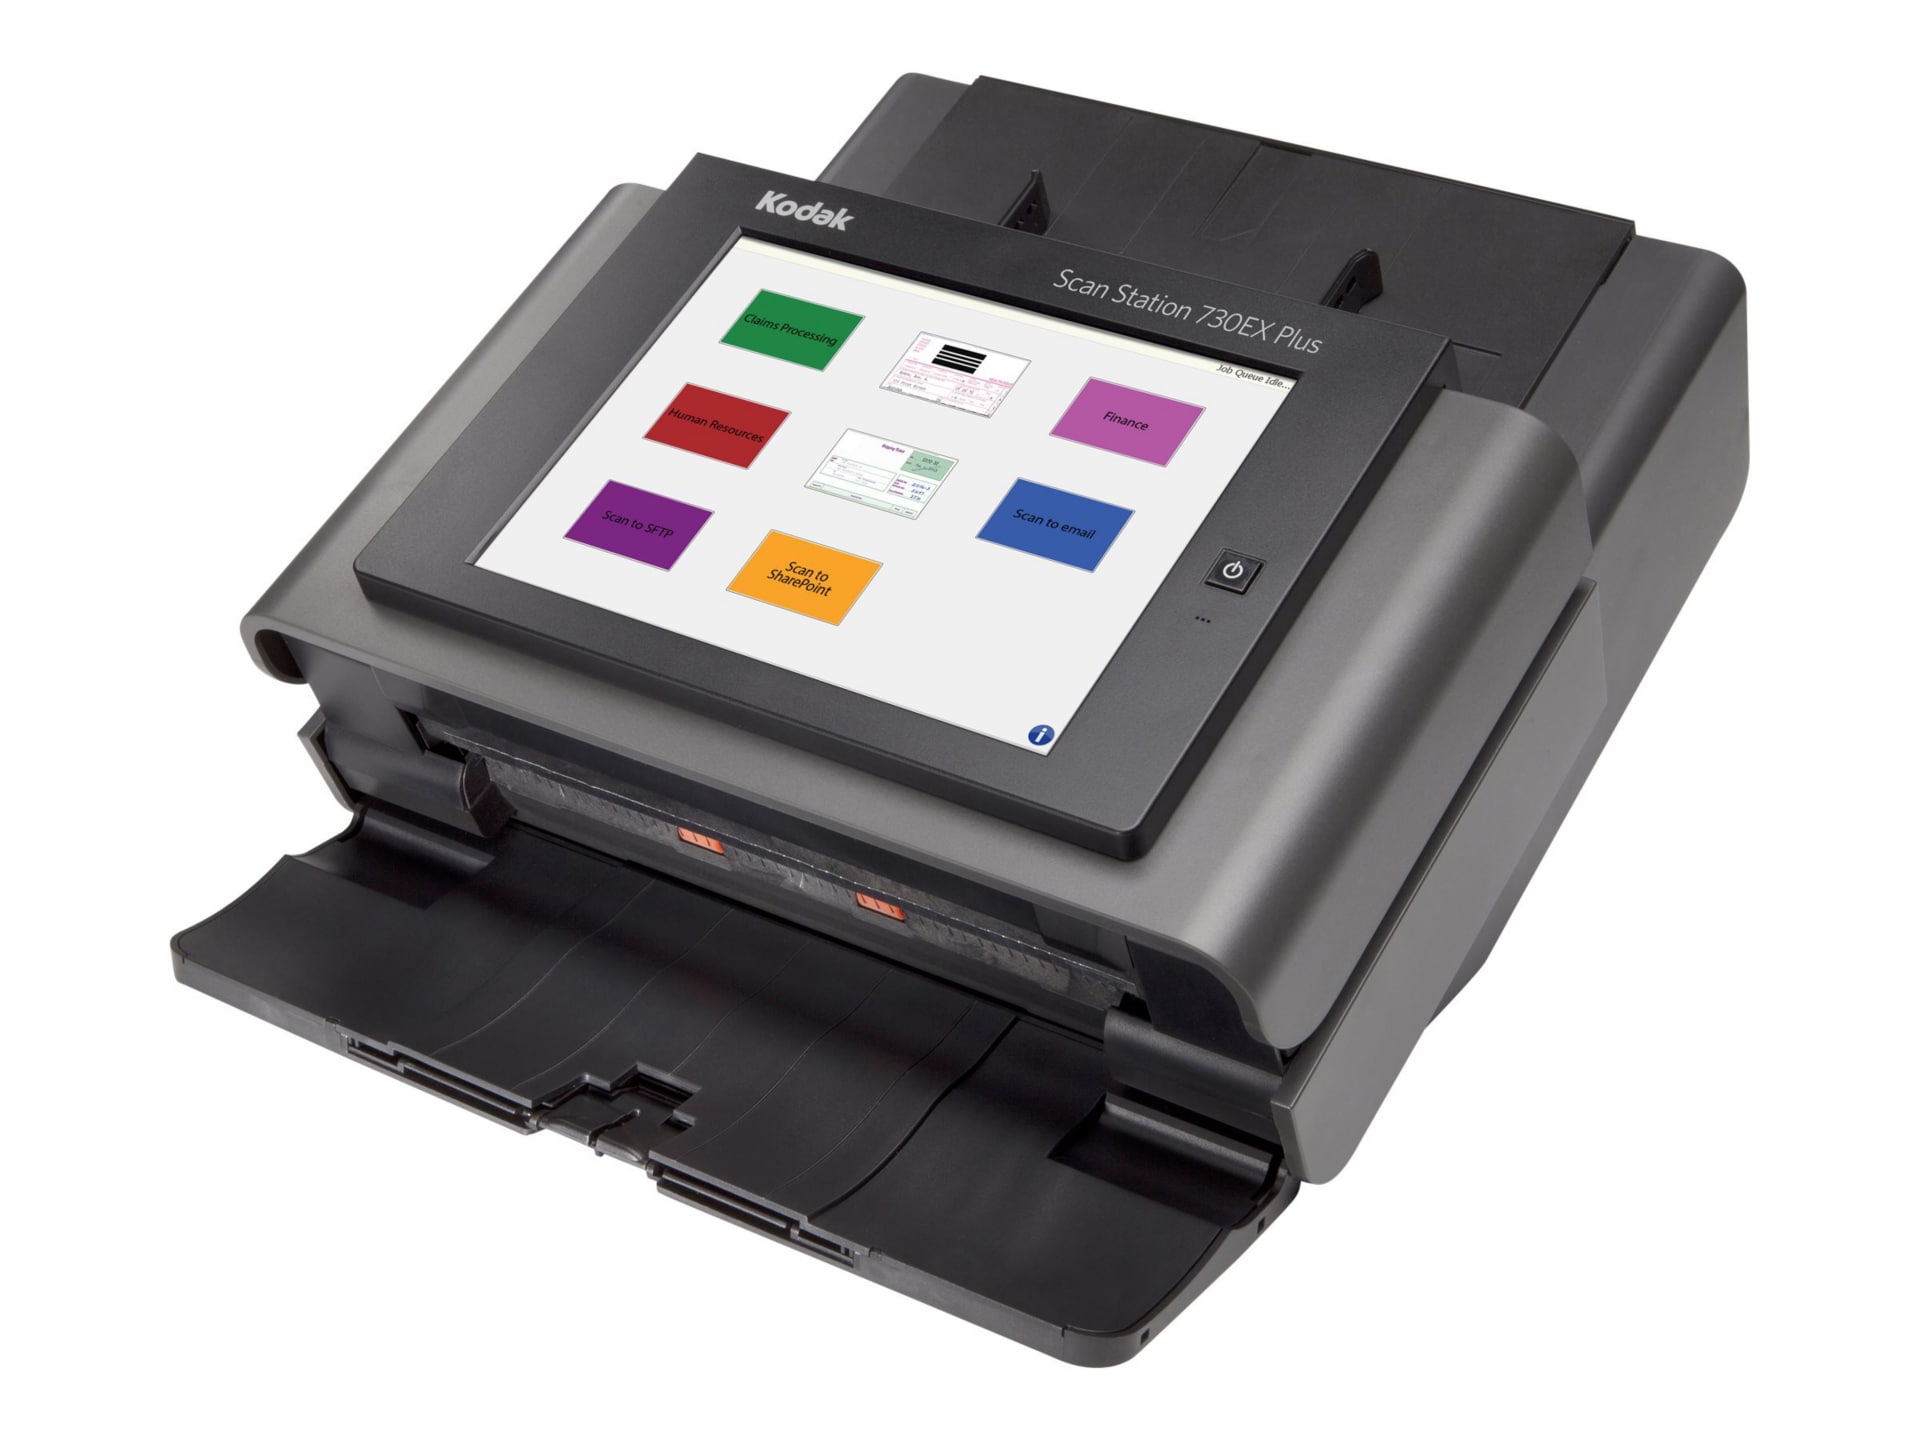 Kodak Scan Station 730EX Plus - scanner de documents - modèle bureau - Gigabit LAN